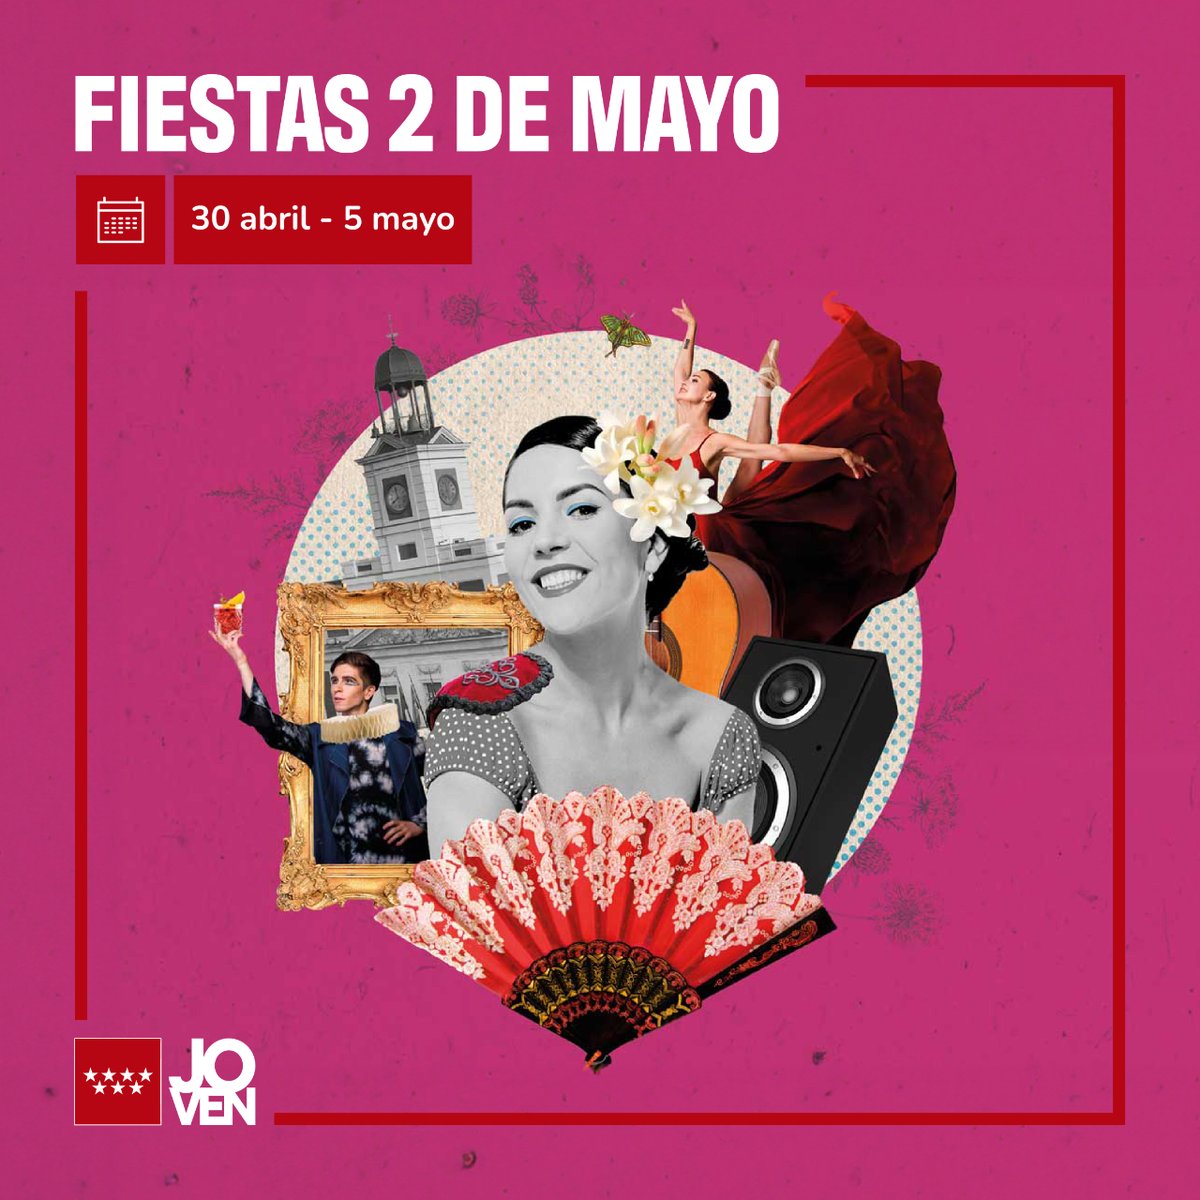 🥳 Celebra y disfruta de las Fiestas del 2 de mayo que tendrán lugar en la Comunidad de Madrid. ¡Conciertos, exposiciones, teatro y muchas actividades más! 🔗 Consulta el programa completo: bit.ly/3vXWiQJ #Juventud @ComunidadMadrid